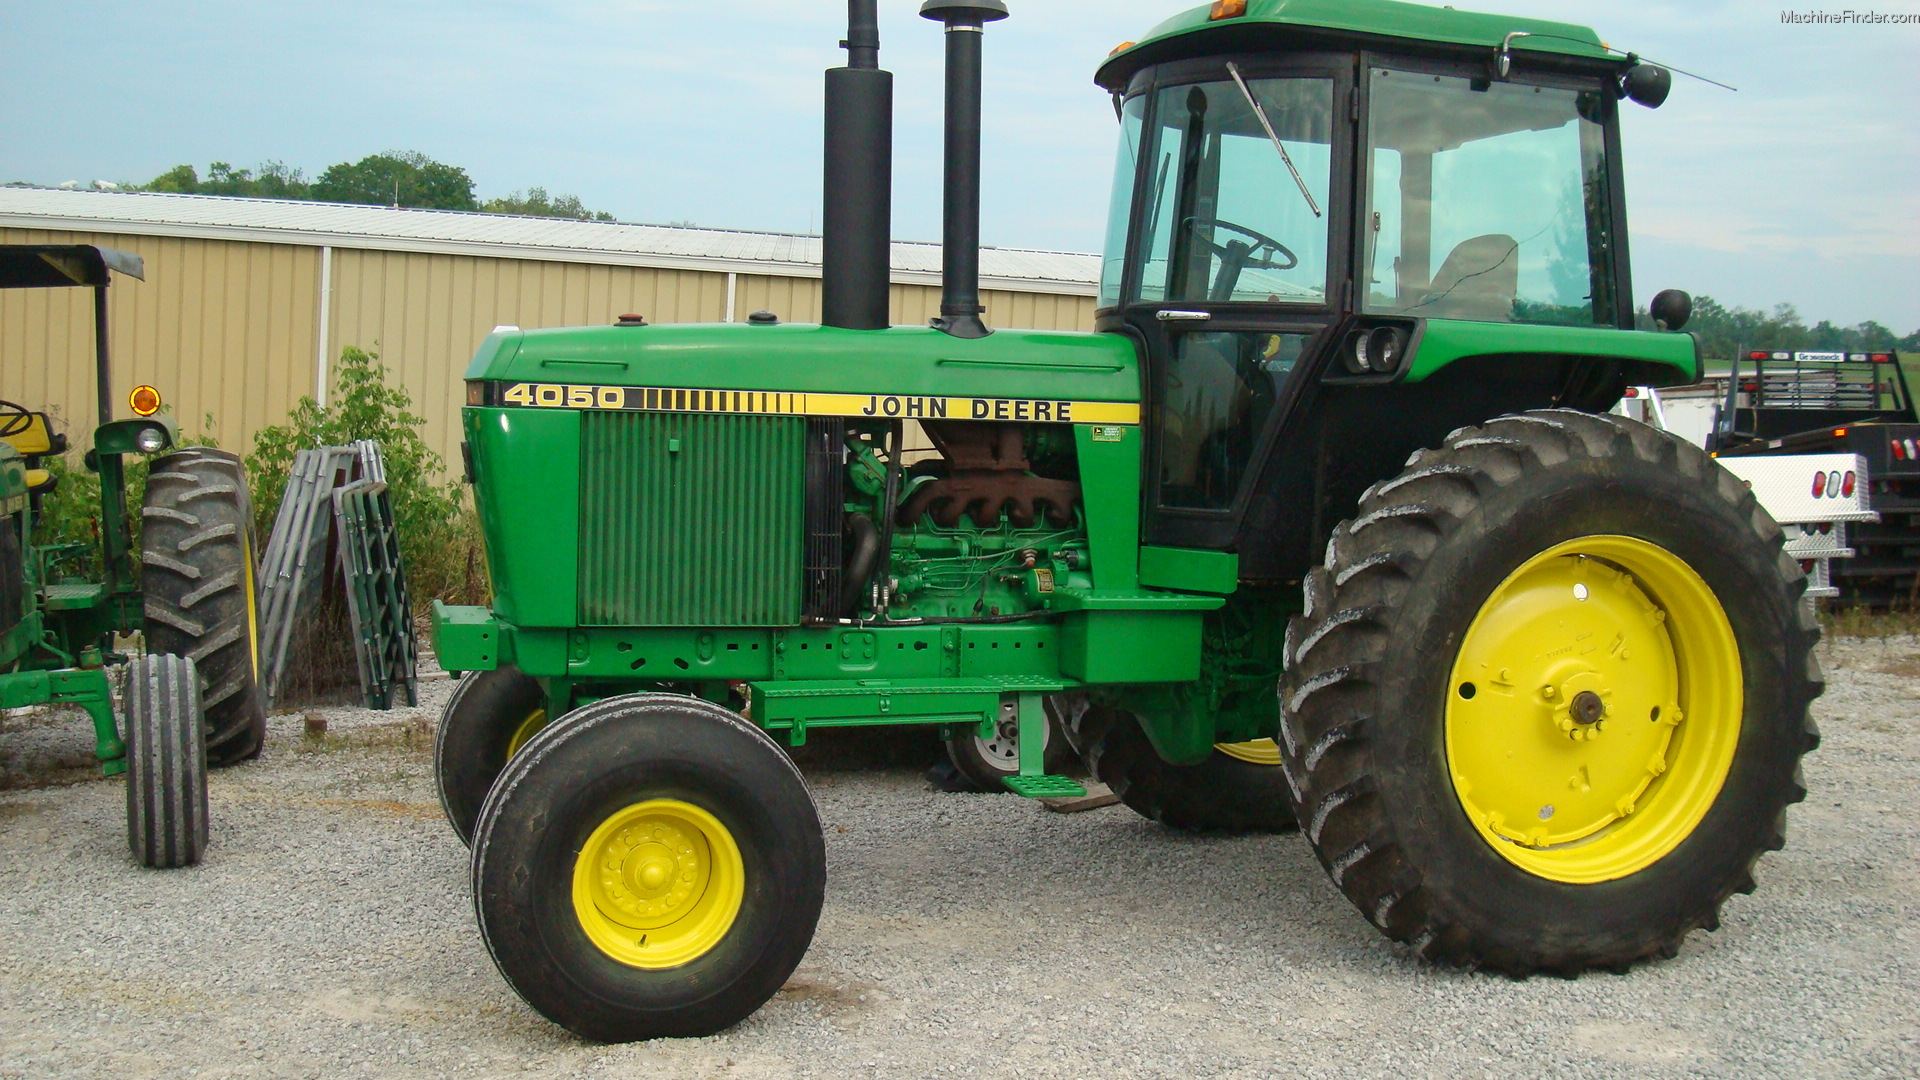 1988 John Deere 4050 Tractors - Row Crop (+100hp) - John Deere ...